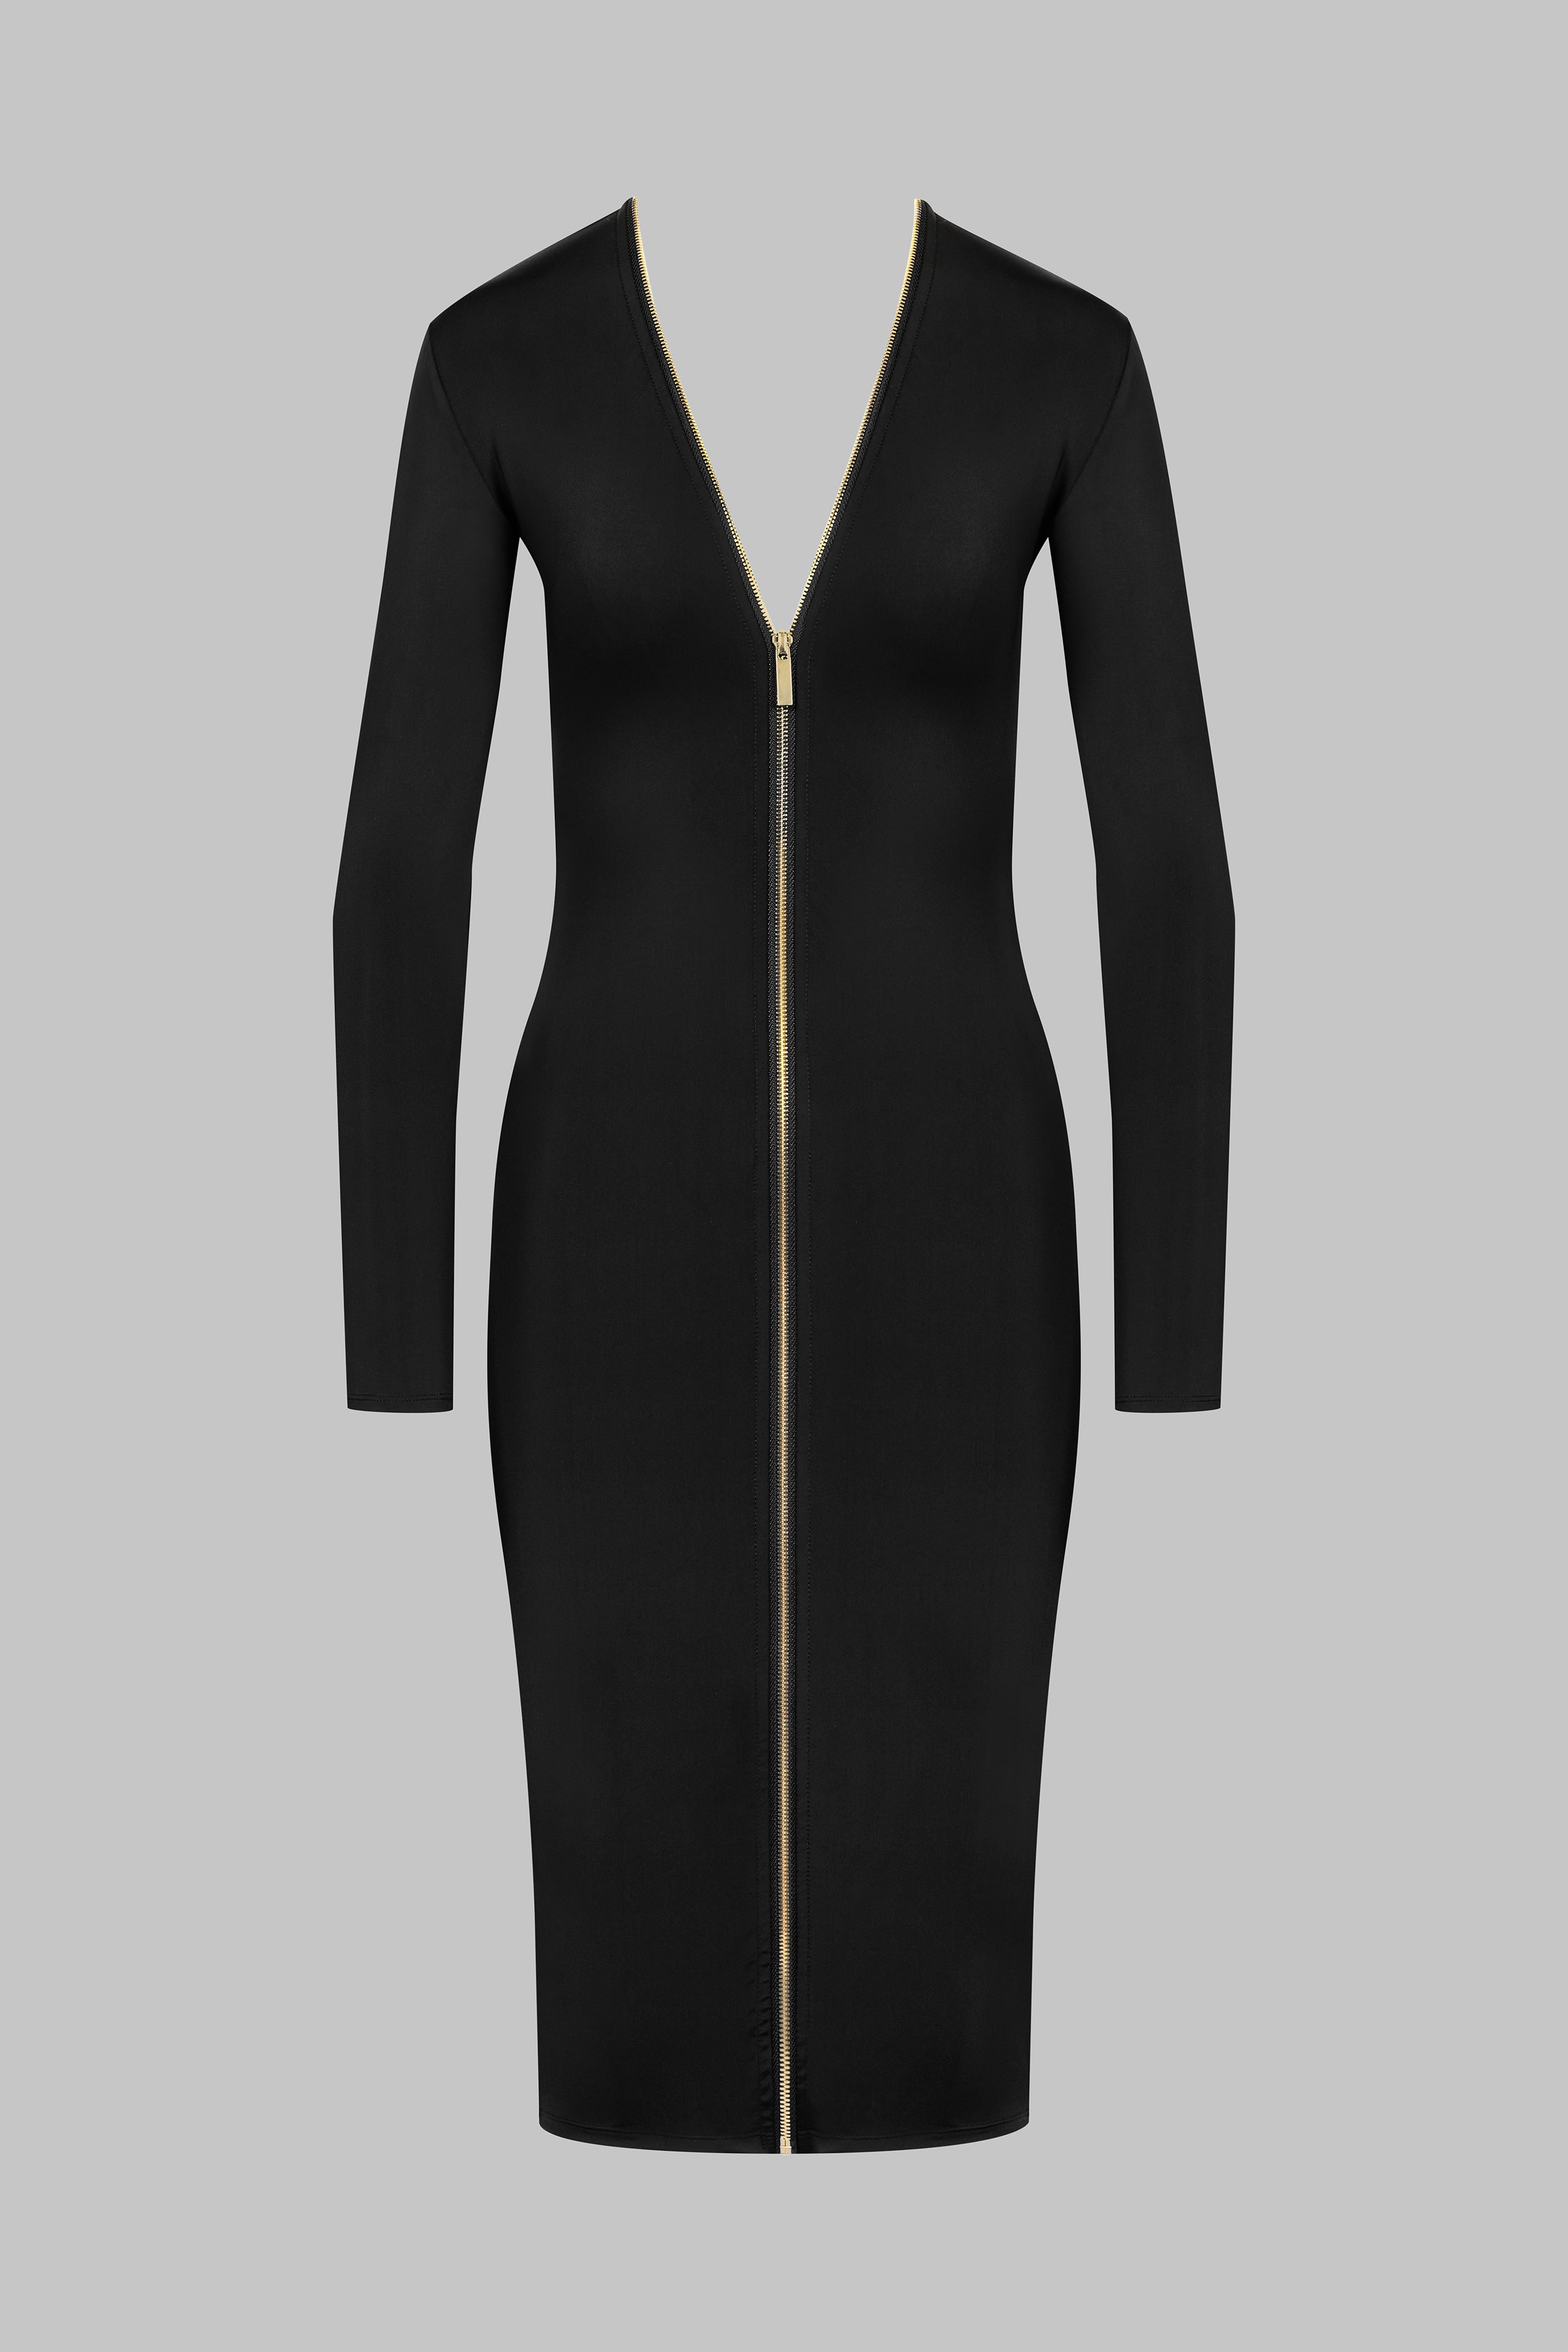 021 - Stretch midi dress with zip